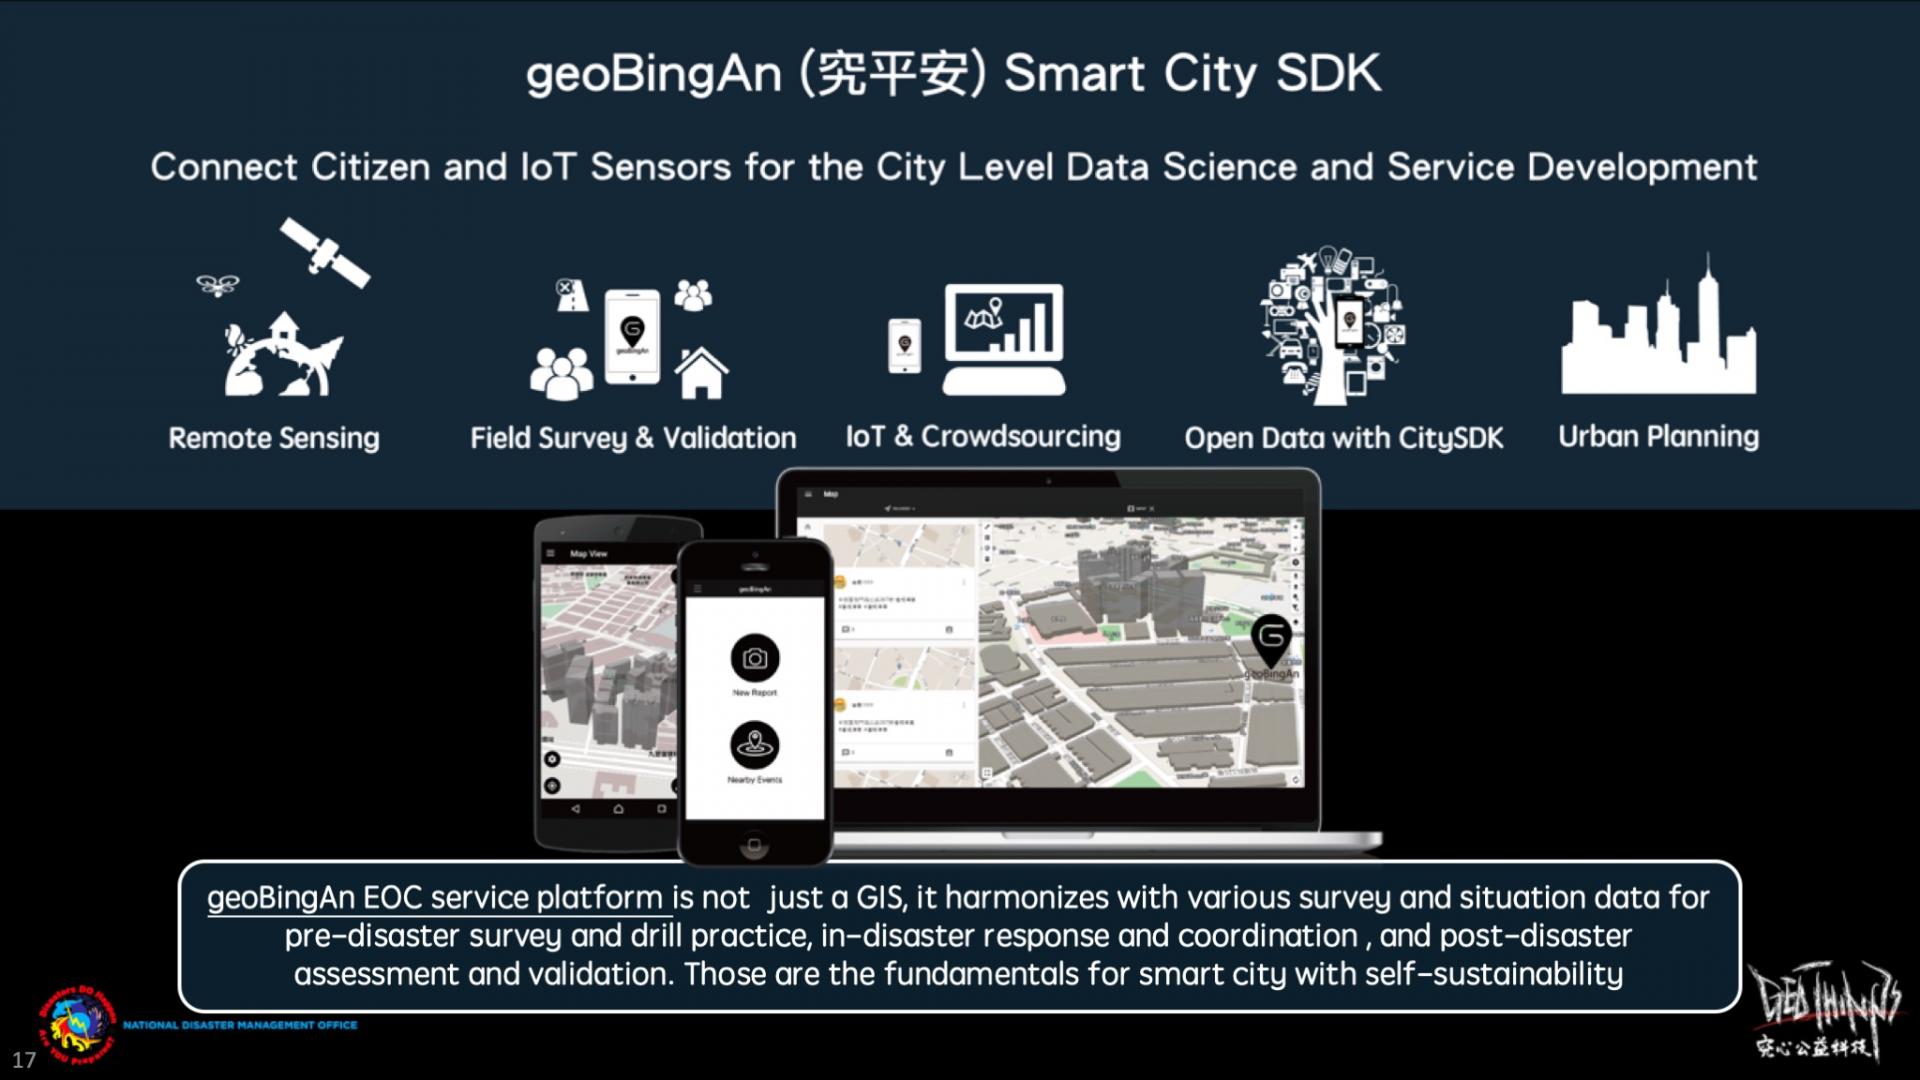 geoBingAn puede no solo actuar como centro de operaciones de emergencia (EOC), sino también como plataforma del Kit de desarrollo de servicios de ciudades inteligentes para la planificación urbana.